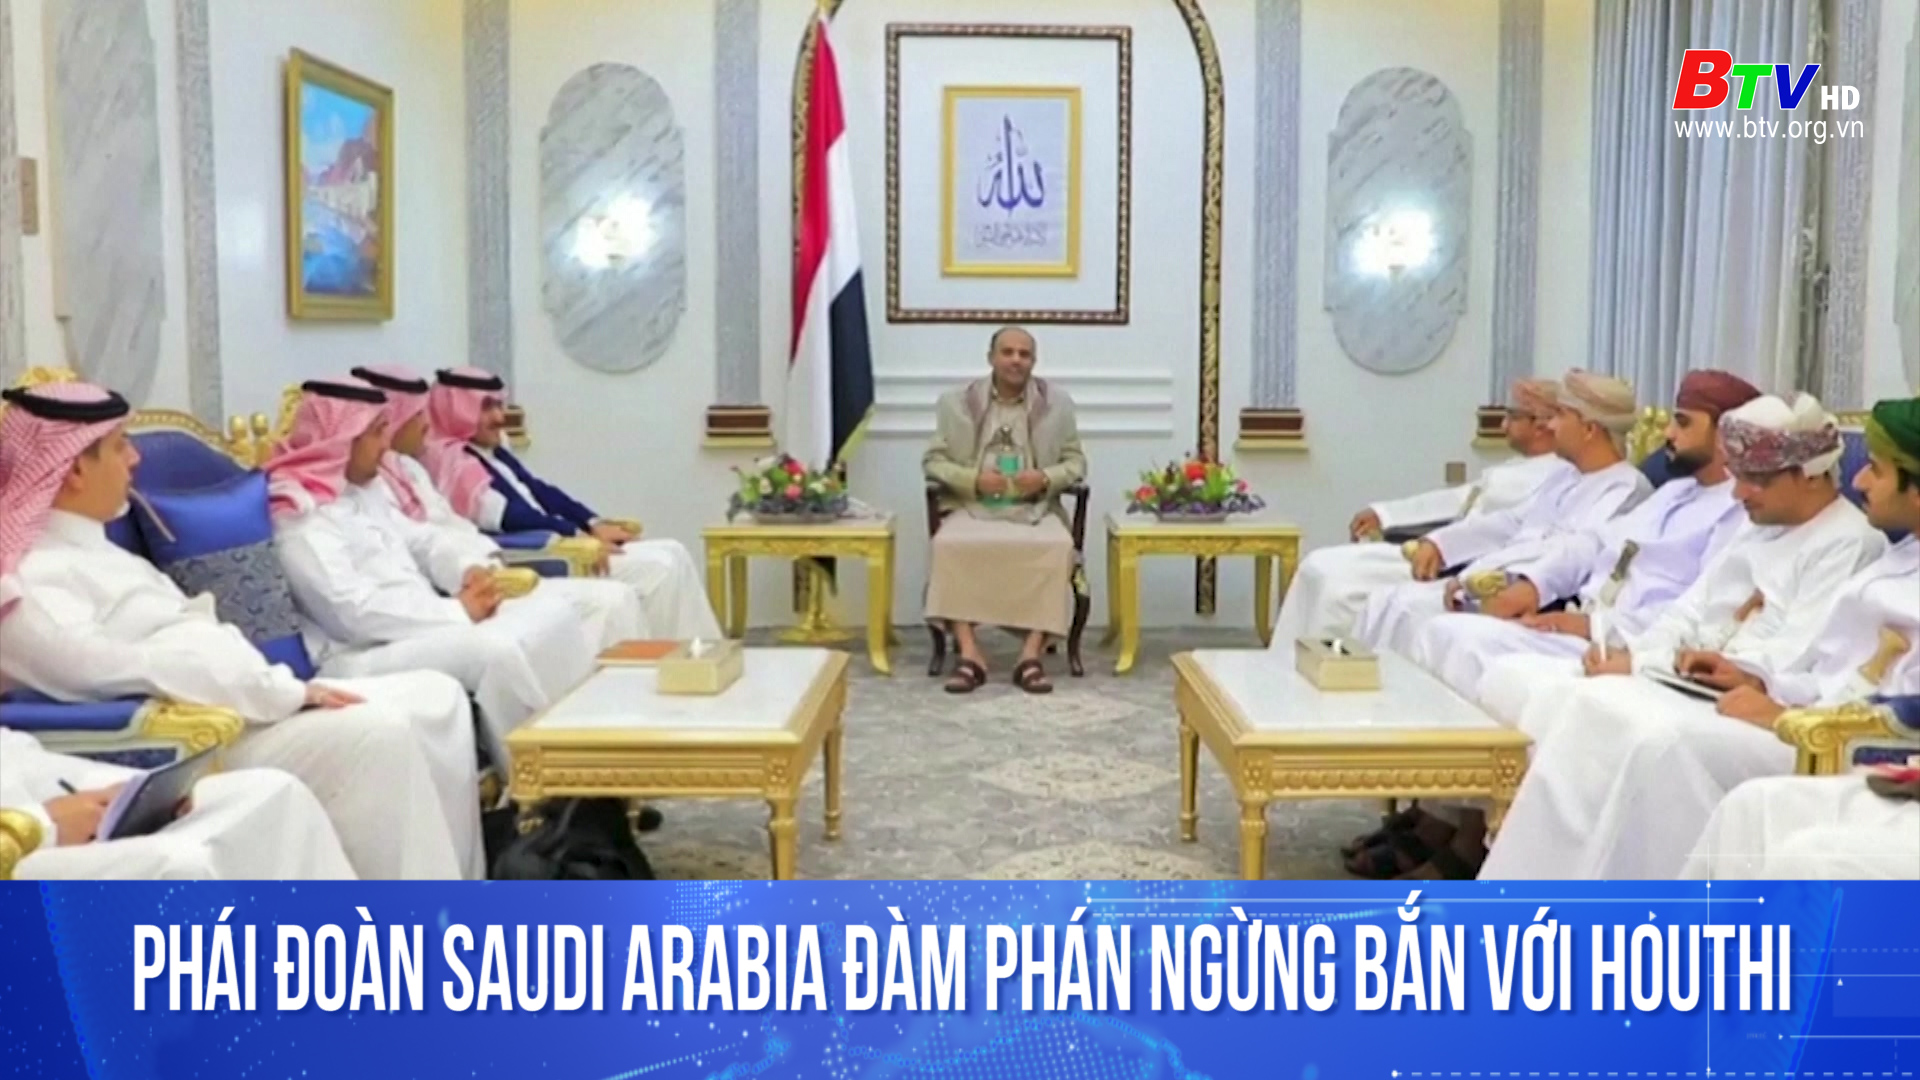 Phái đoàn Saudi Arabia đàm phán ngừng bắn với Houthi